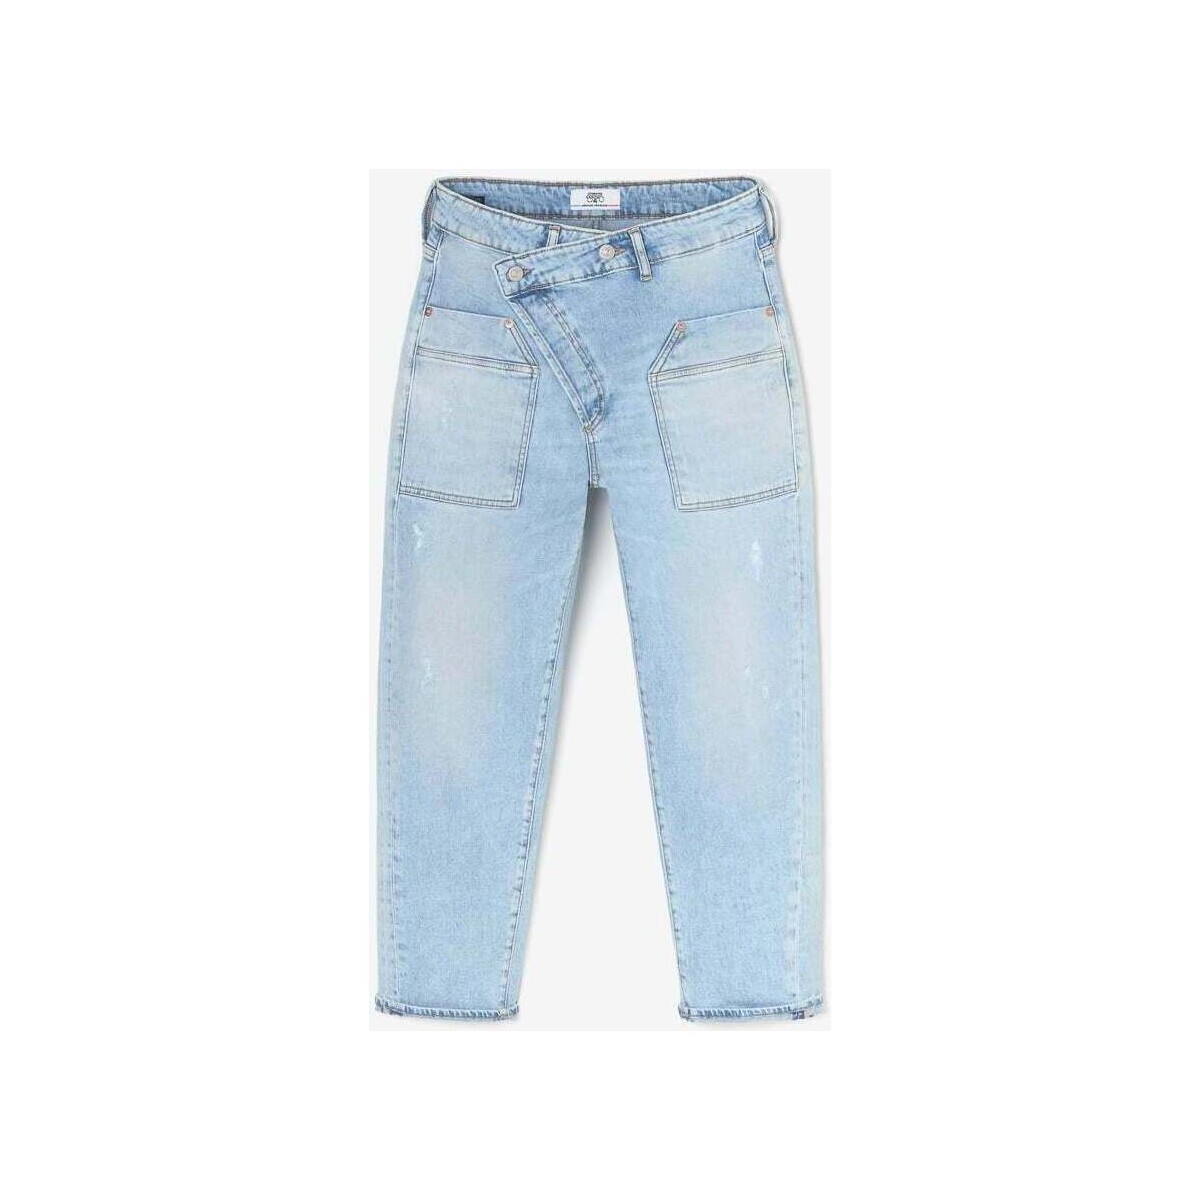 Le Temps des Cerises Bleu Cosy pocket boyfit 7/8ème jeans destroy bleu ZPAxY6xi